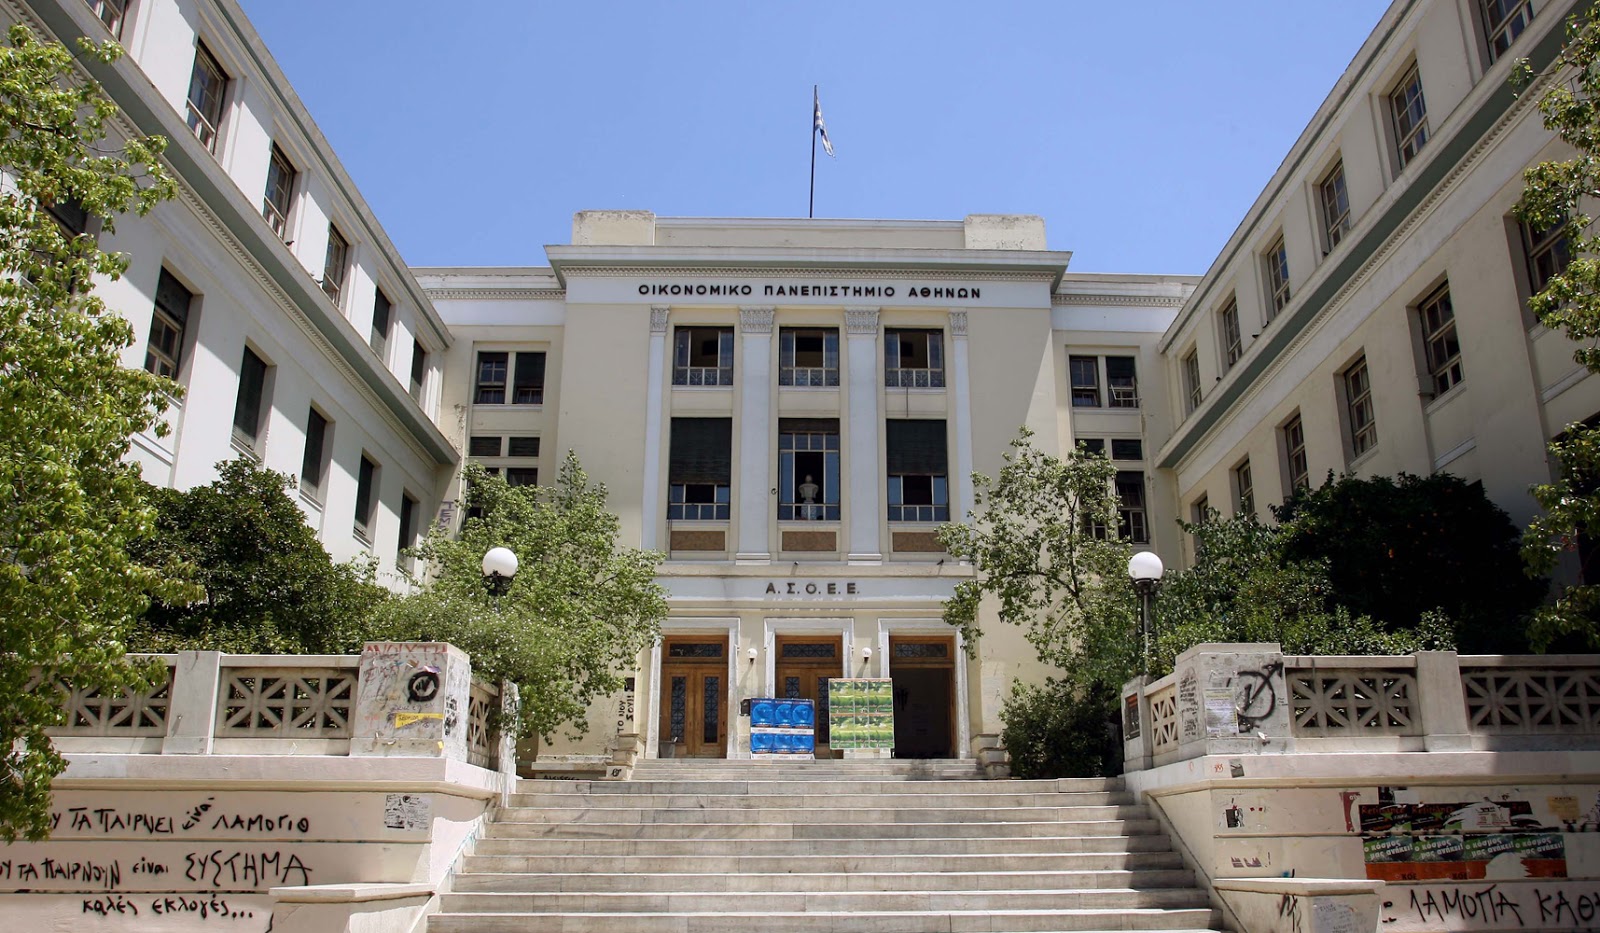 Κλειστό το Οικονομικό Πανεπιστήμιο Αθηνών εξαιτίας των τοξικομανών